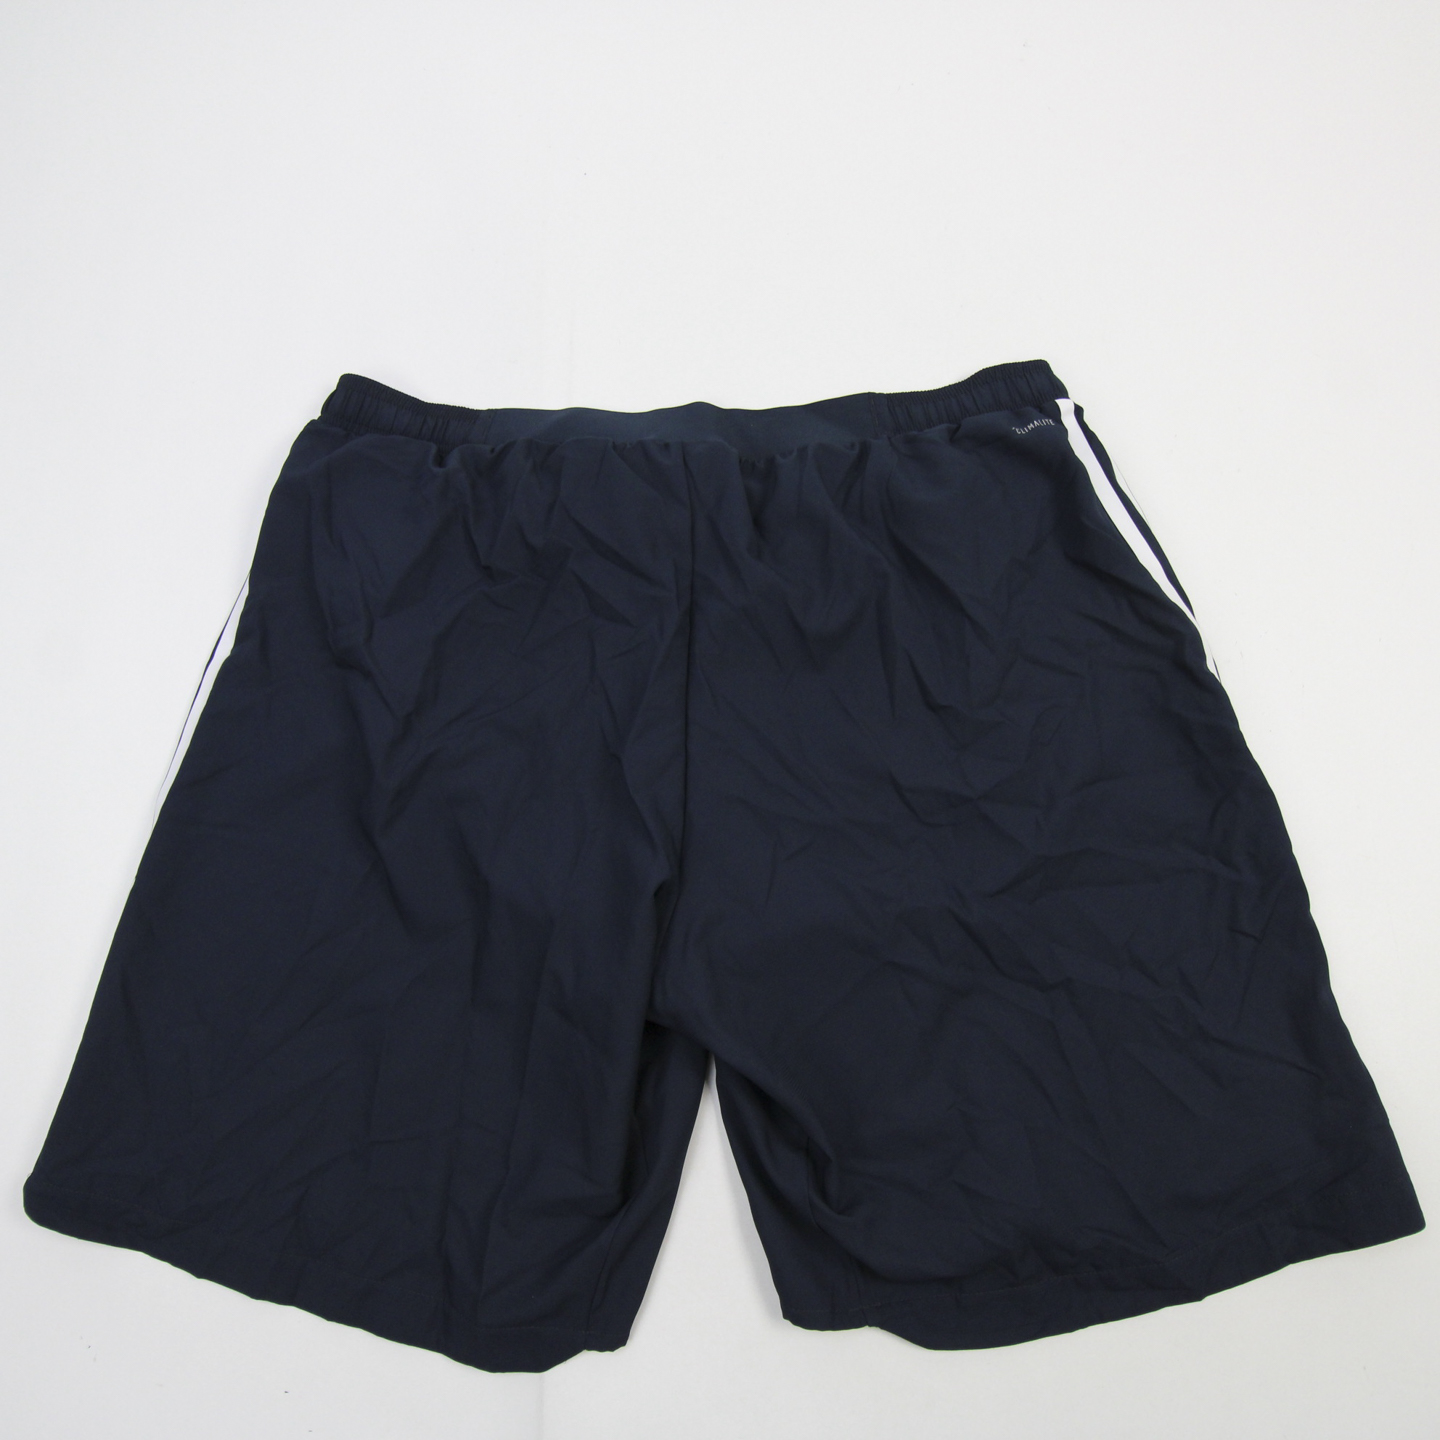 Union Climalite Game Shorts Men's Navy New | eBay